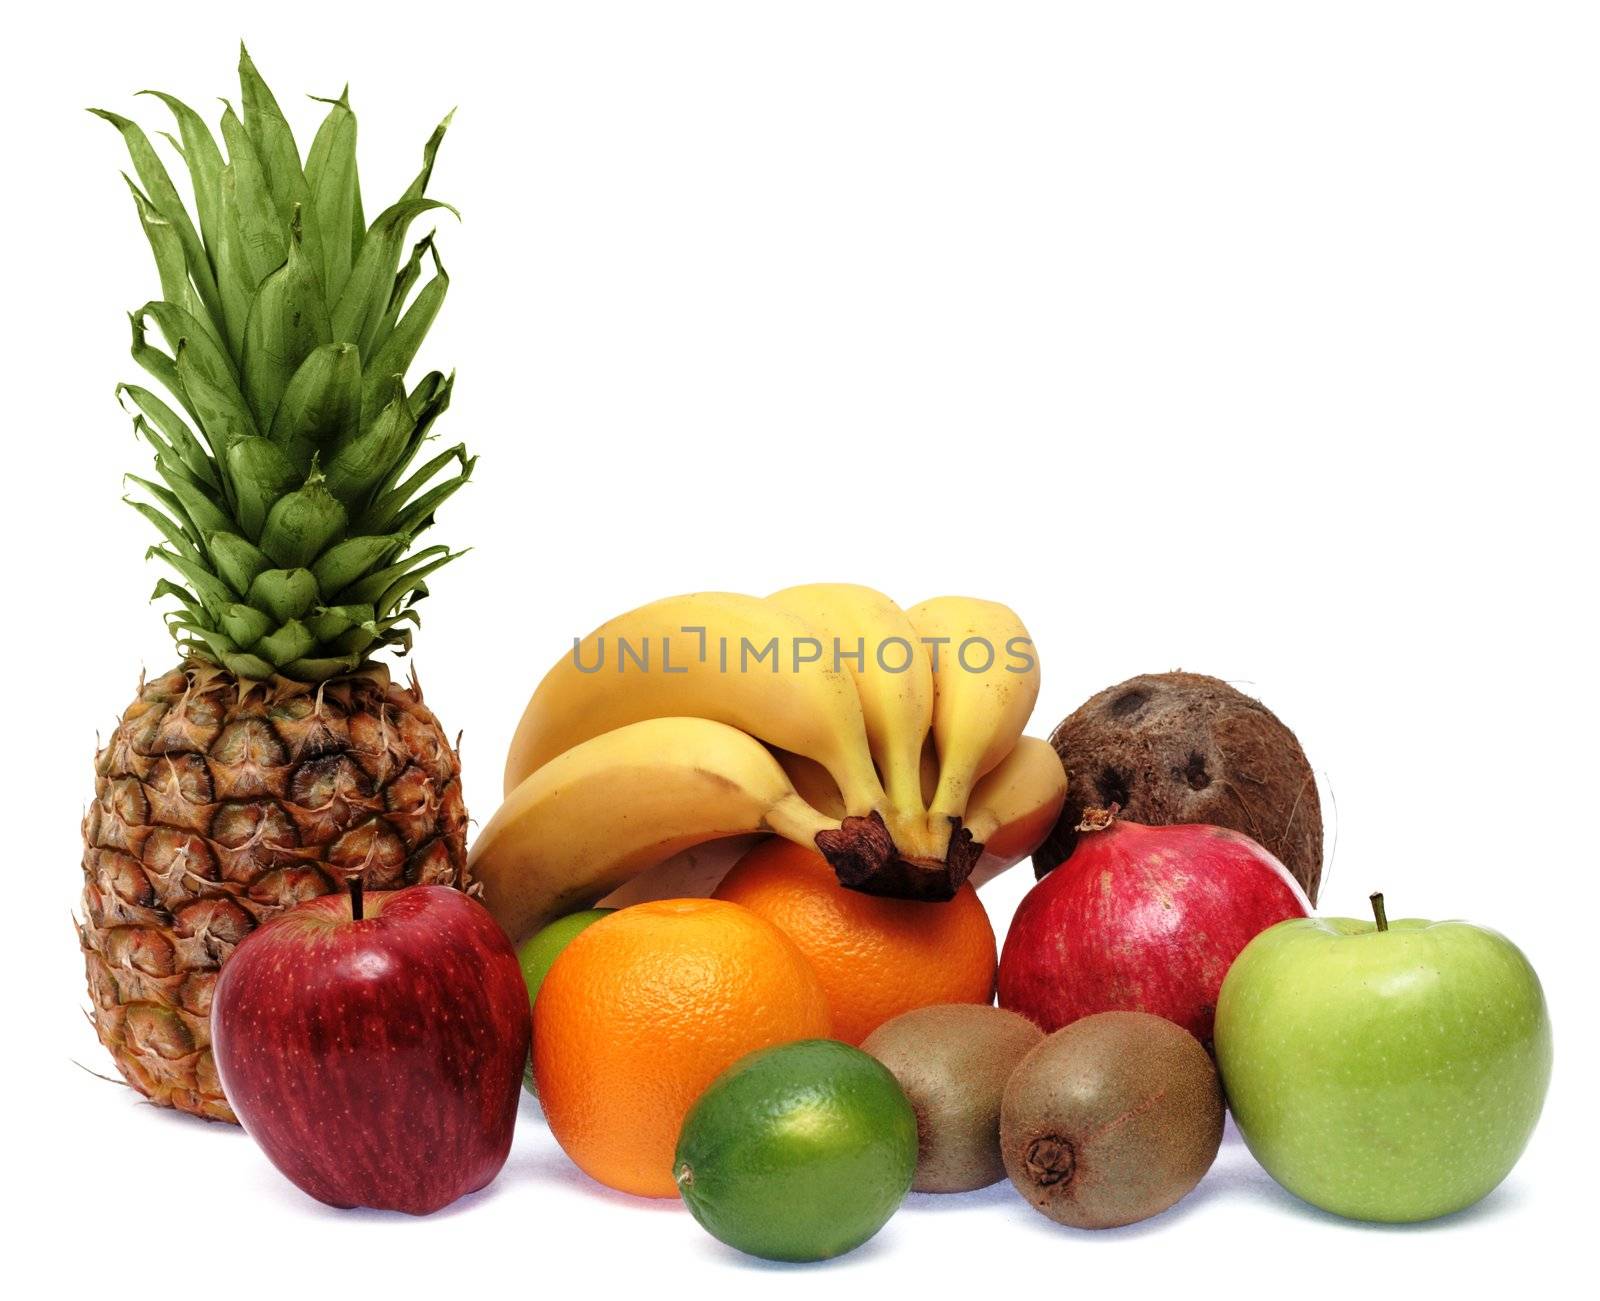 Group of fresh ripe fruits isolated on white background